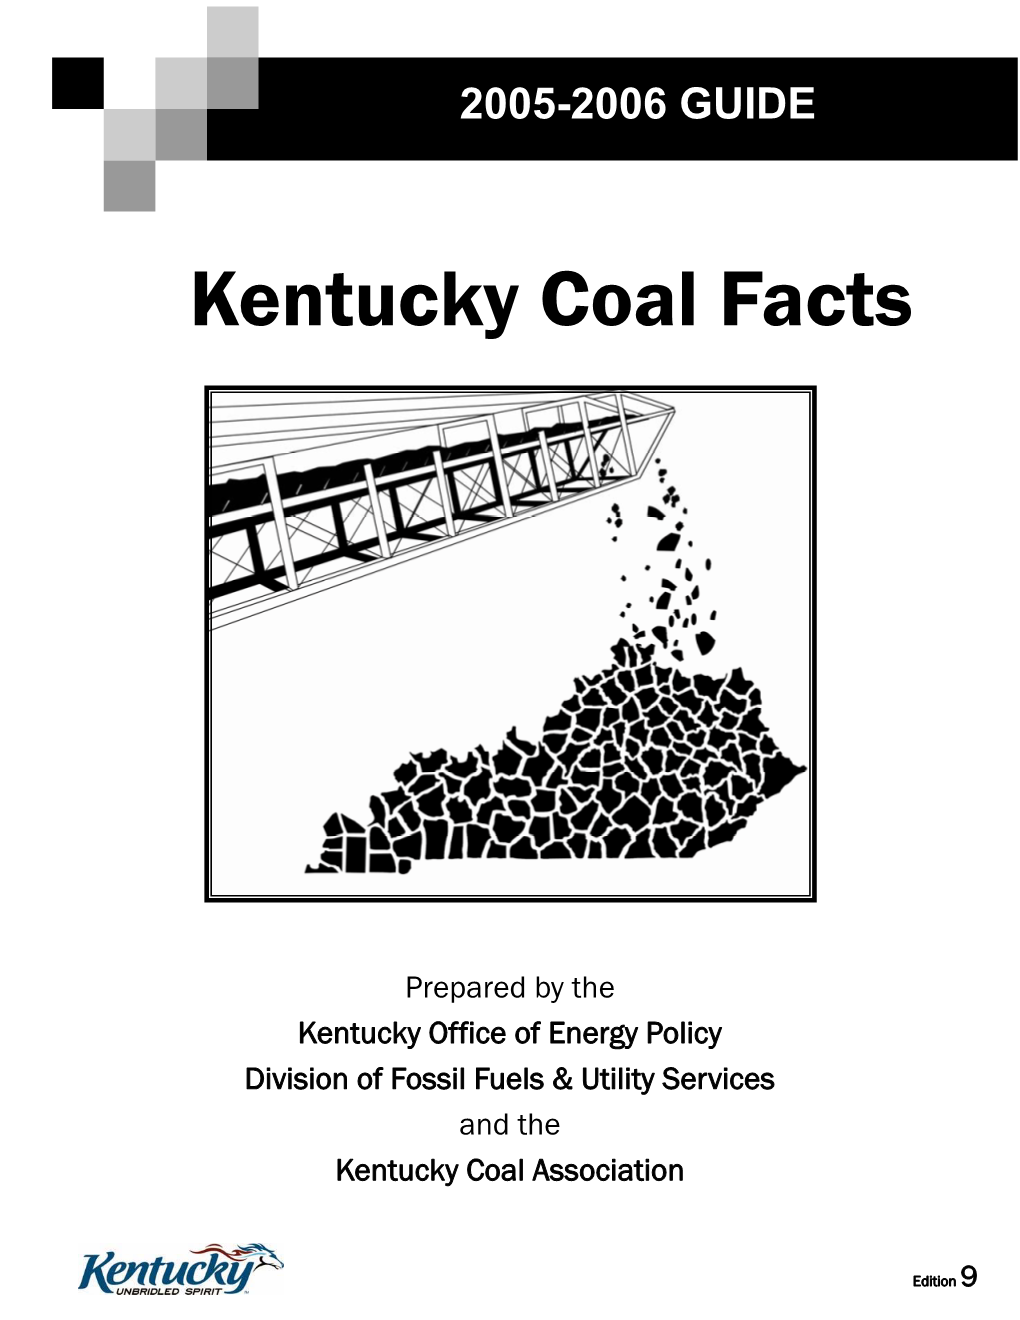 Coal Facts 2005-06.Pub